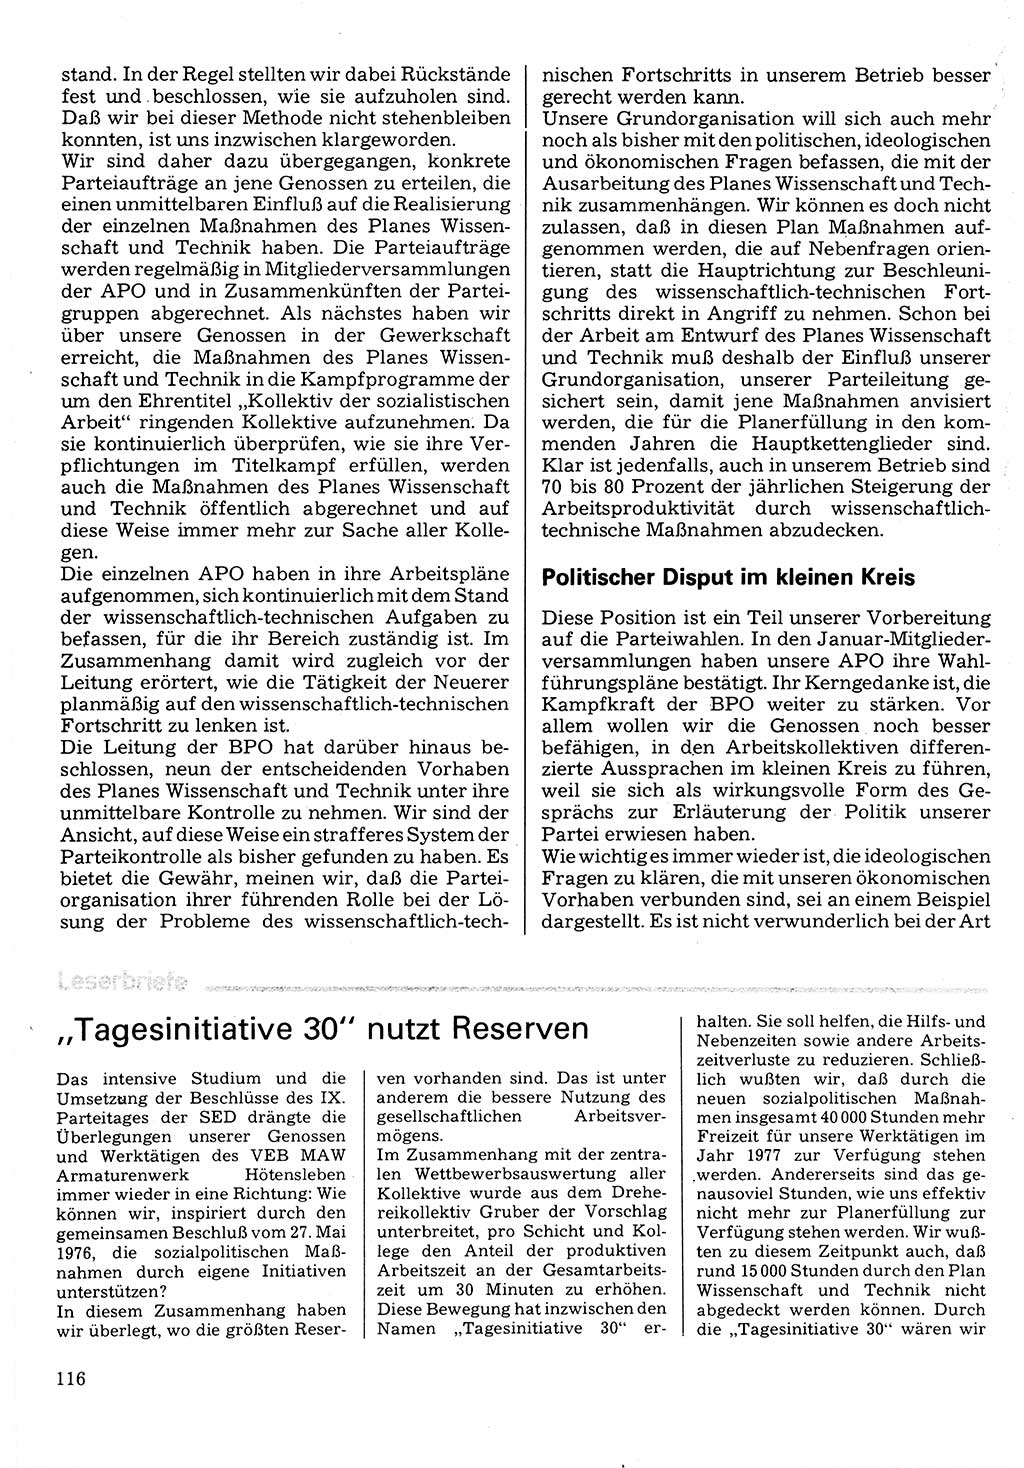 Neuer Weg (NW), Organ des Zentralkomitees (ZK) der SED (Sozialistische Einheitspartei Deutschlands) für Fragen des Parteilebens, 32. Jahrgang [Deutsche Demokratische Republik (DDR)] 1977, Seite 116 (NW ZK SED DDR 1977, S. 116)